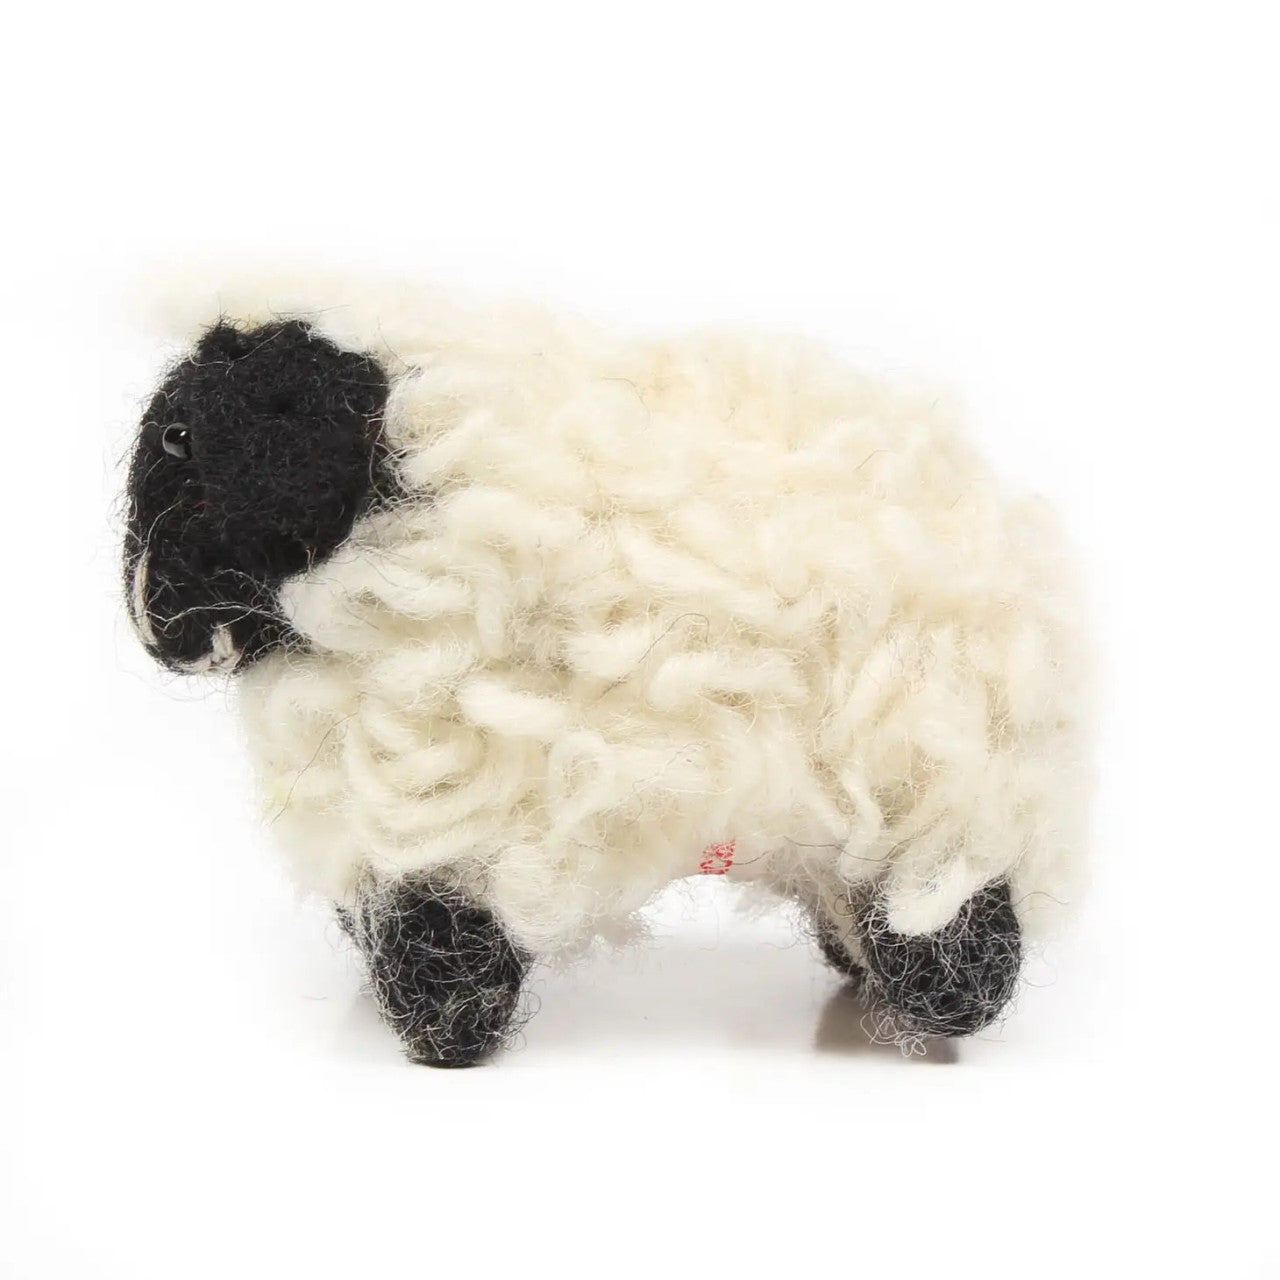 Mini Suffolk Sheep Felt Decoration by Amica Felt